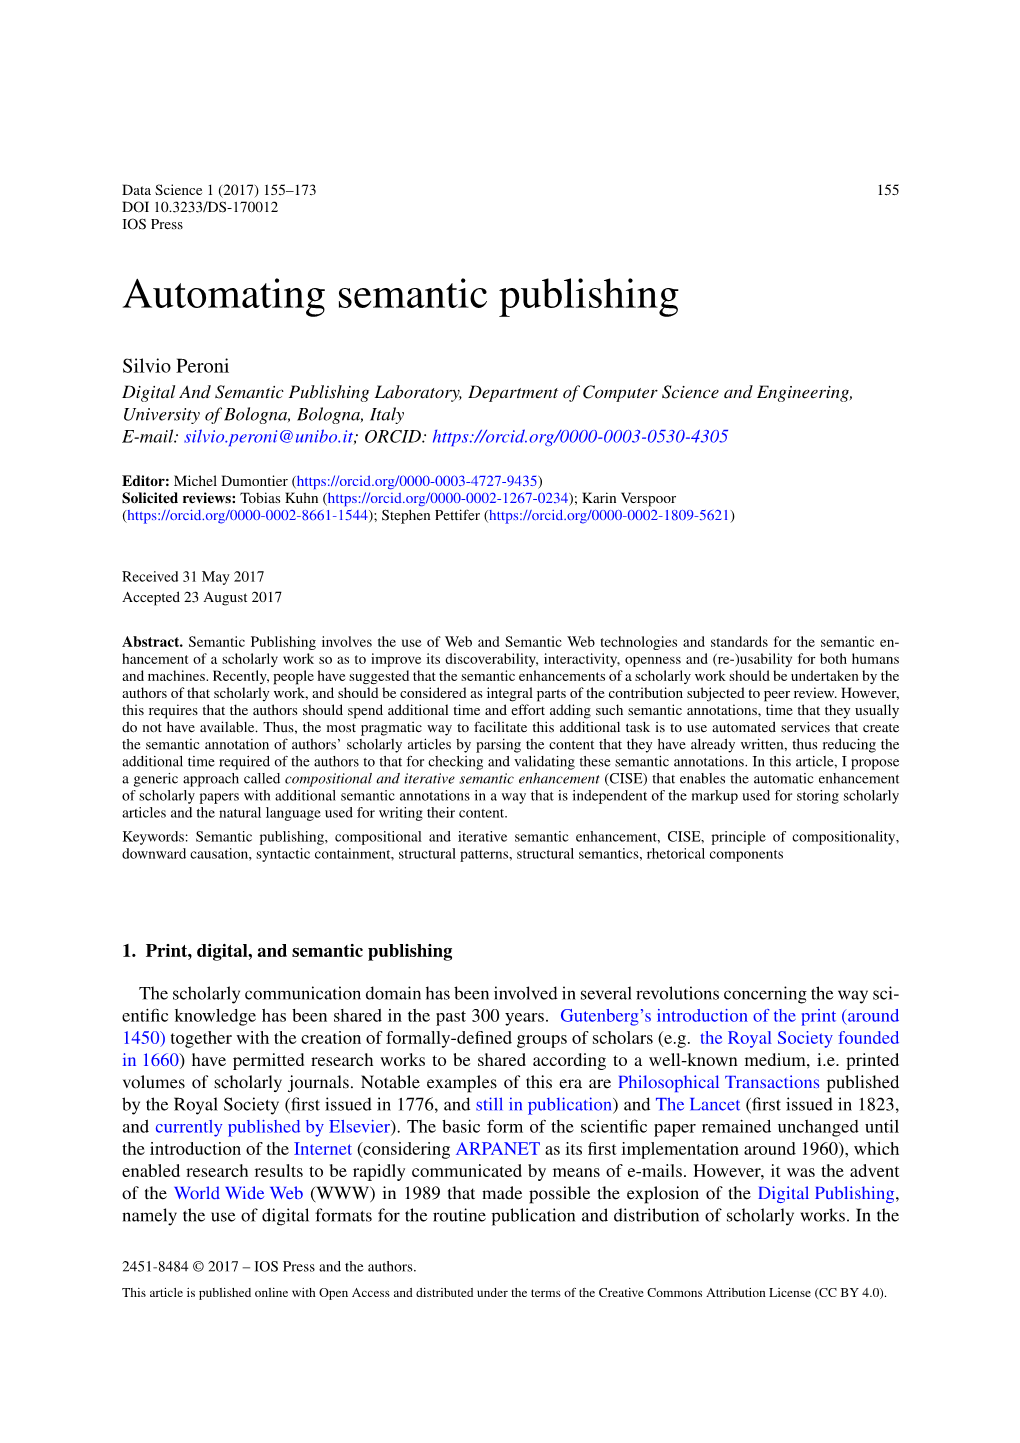 Automating Semantic Publishing